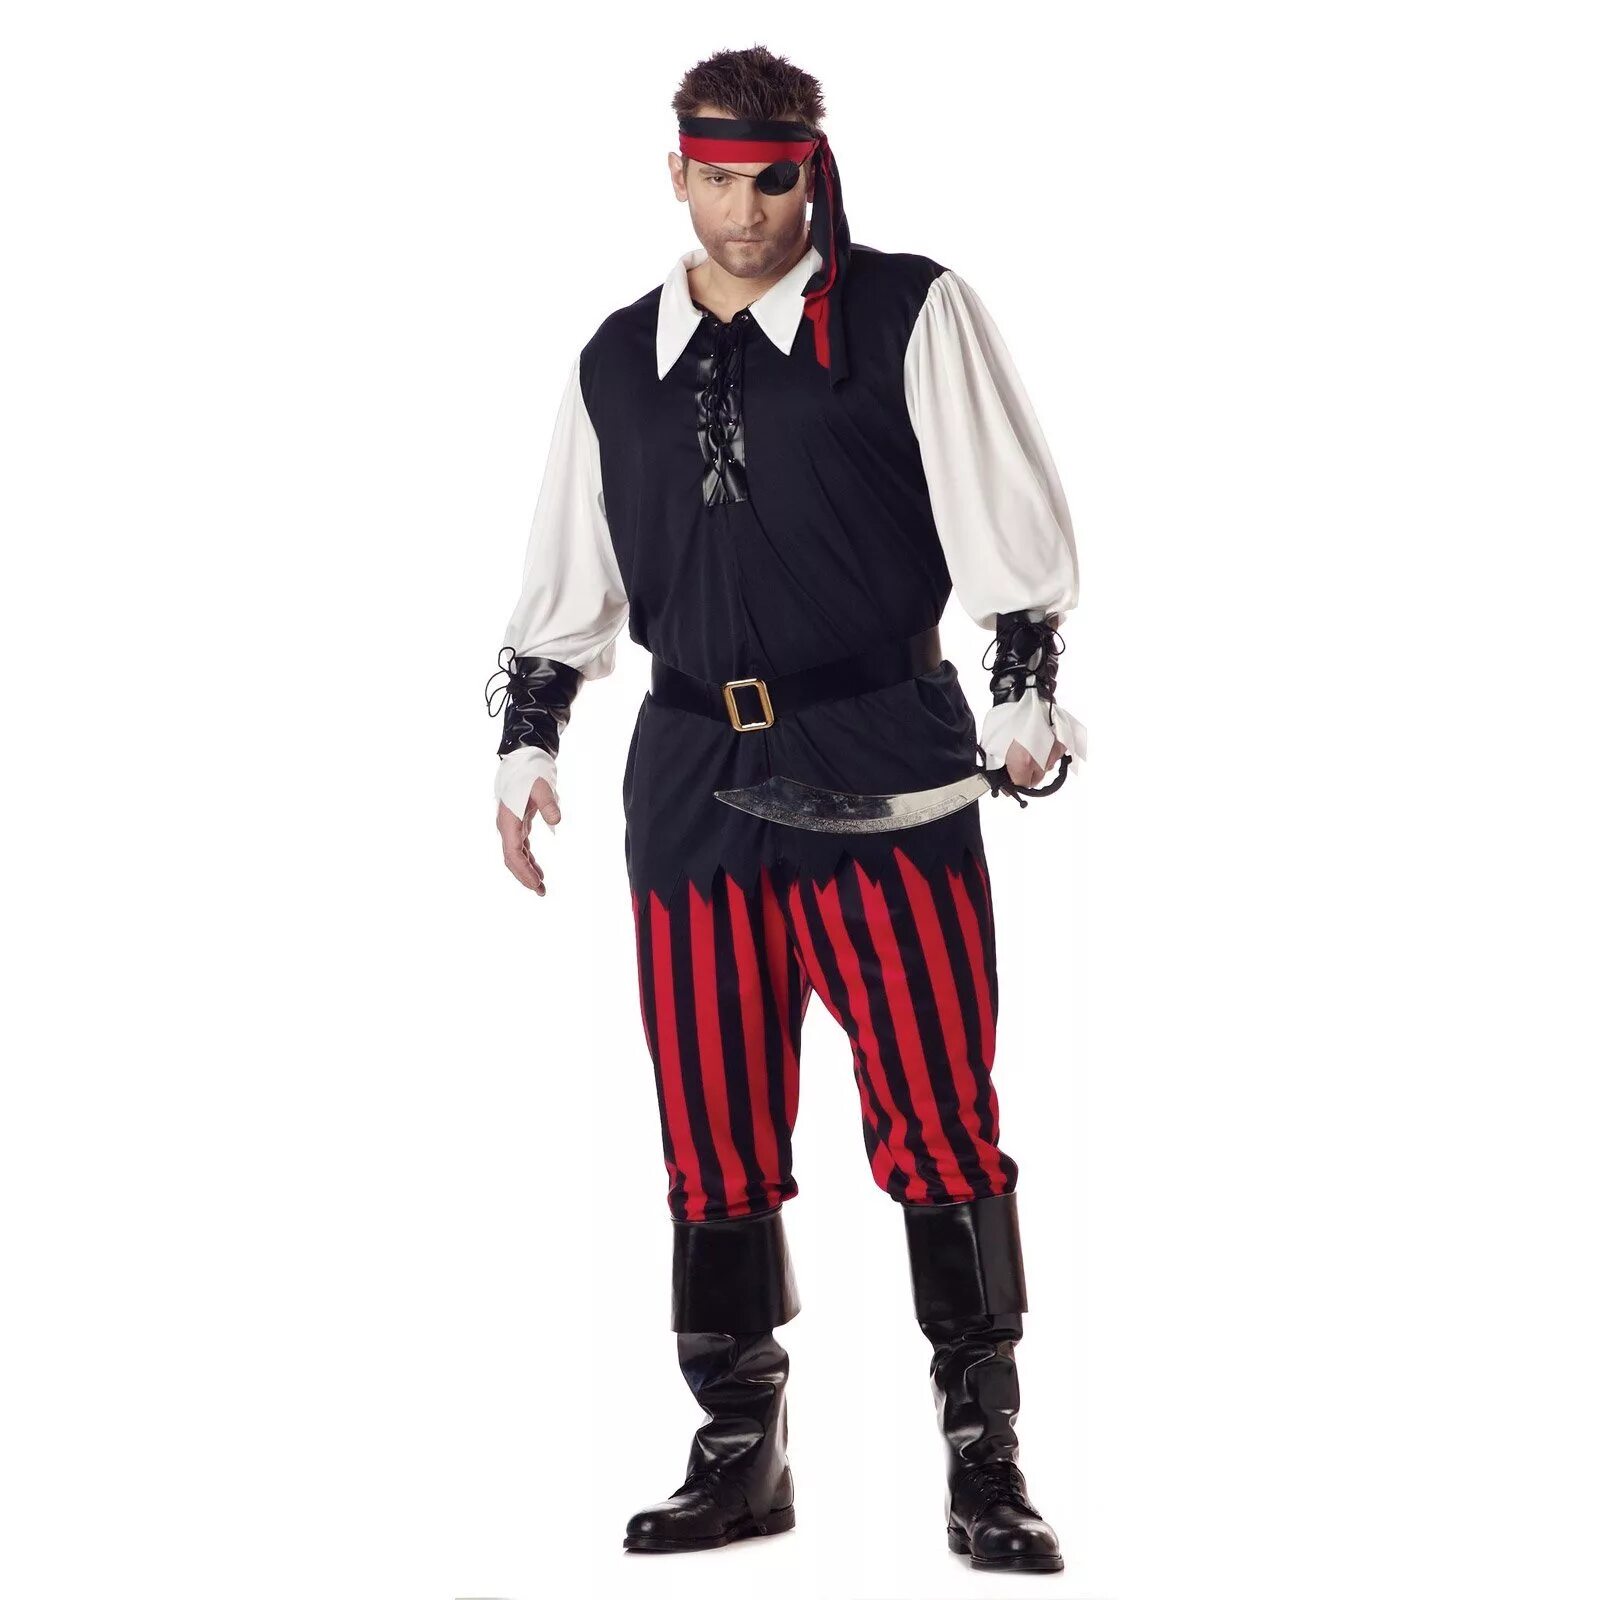 Пират костюм. Костюм пирата. Костюм пирата взрослый. Костюм пирата мужской. Костюм пирата взрослый мужской.